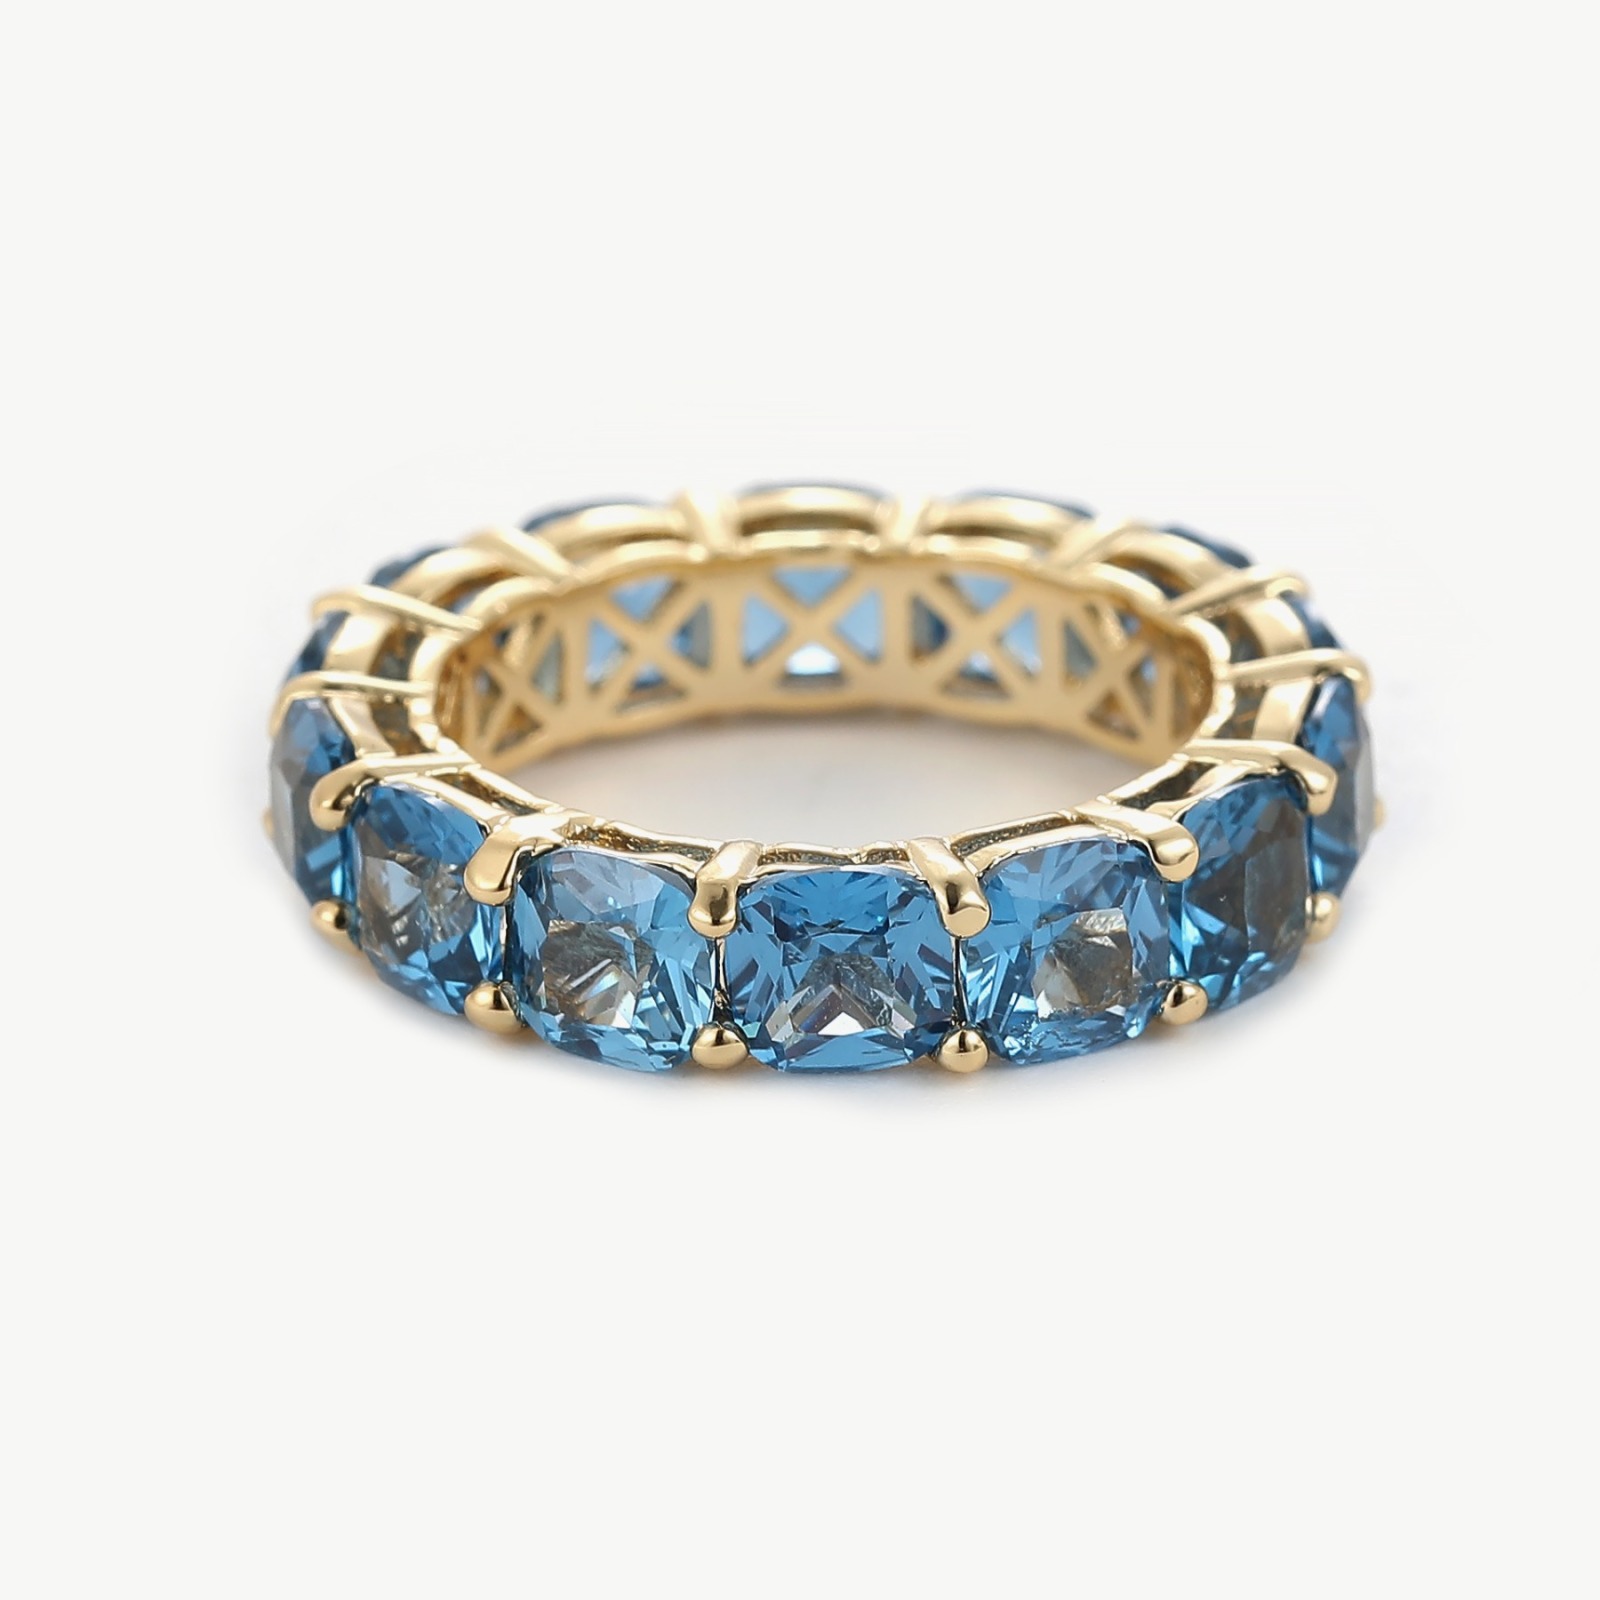 Prächtiger 14 Karat Vergoldeter Ring mit Zirkoniasteinen Ein funkelnder Höhepunkt deines Stils